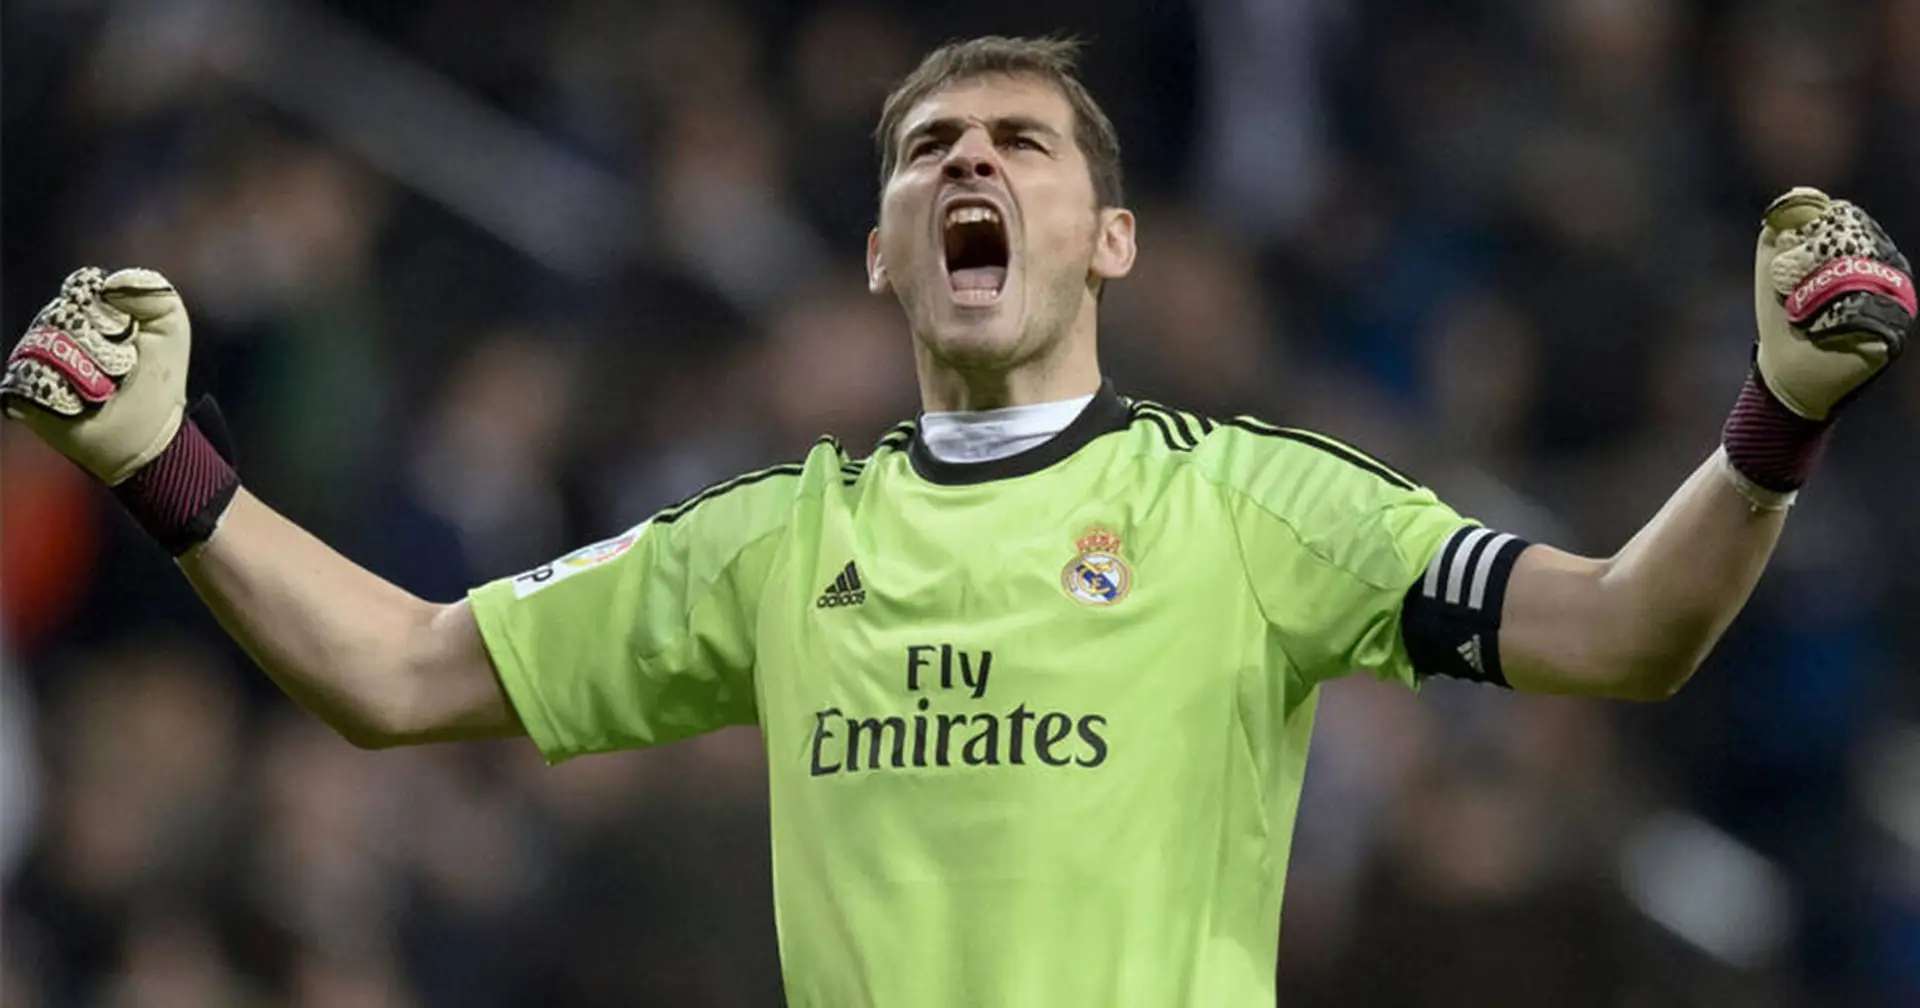 Leyenda blanca: los 10 momentos clave de Iker Casillas en su carrera profesional